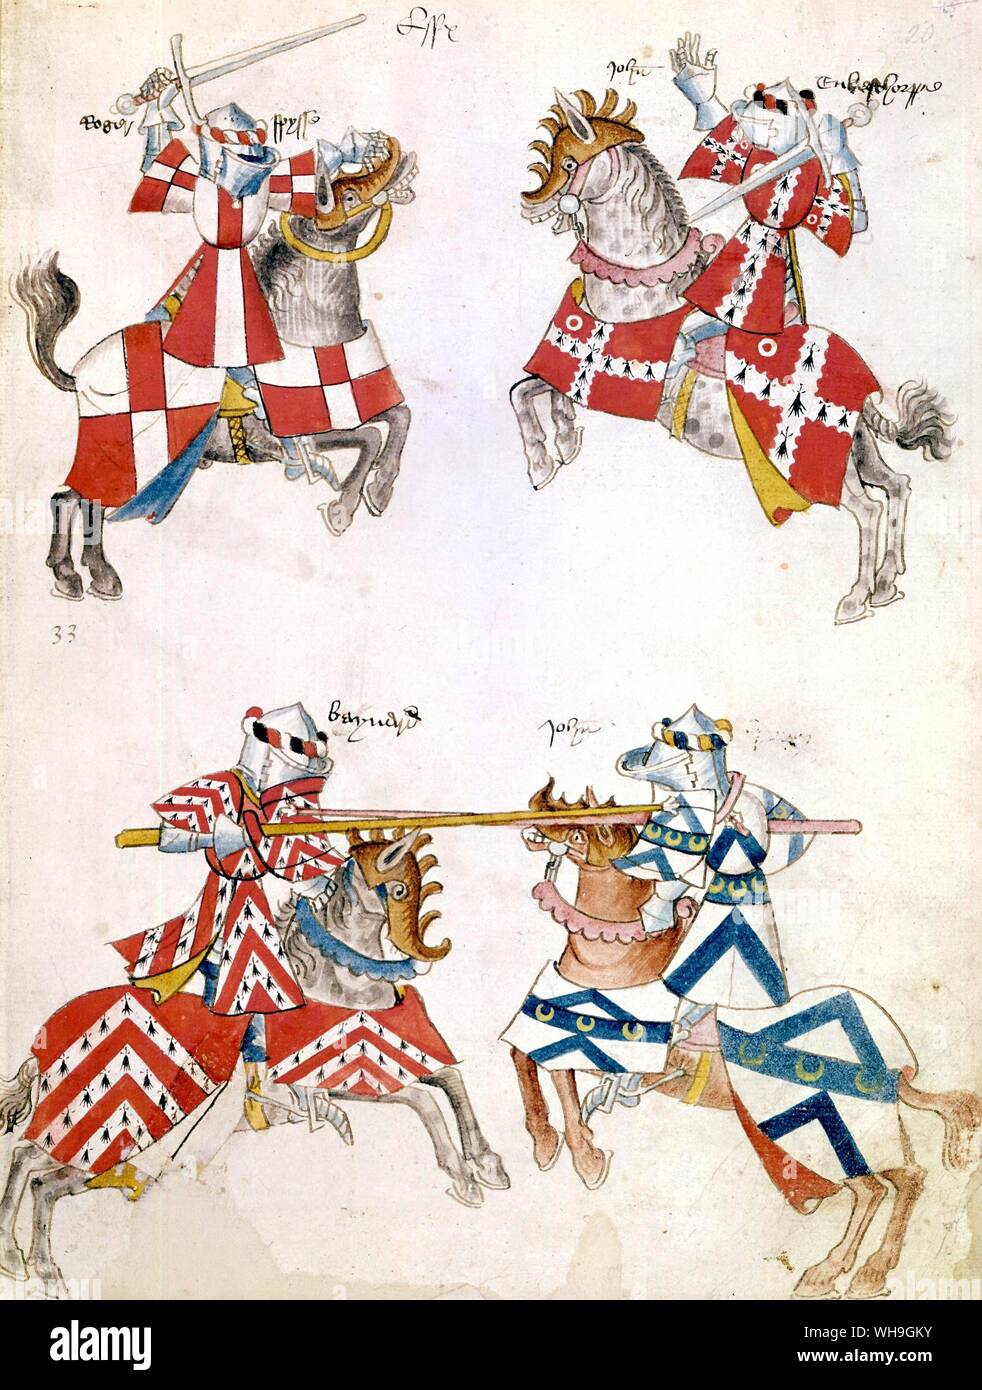 Guerra de manuscritos medievales Harley Foto de stock